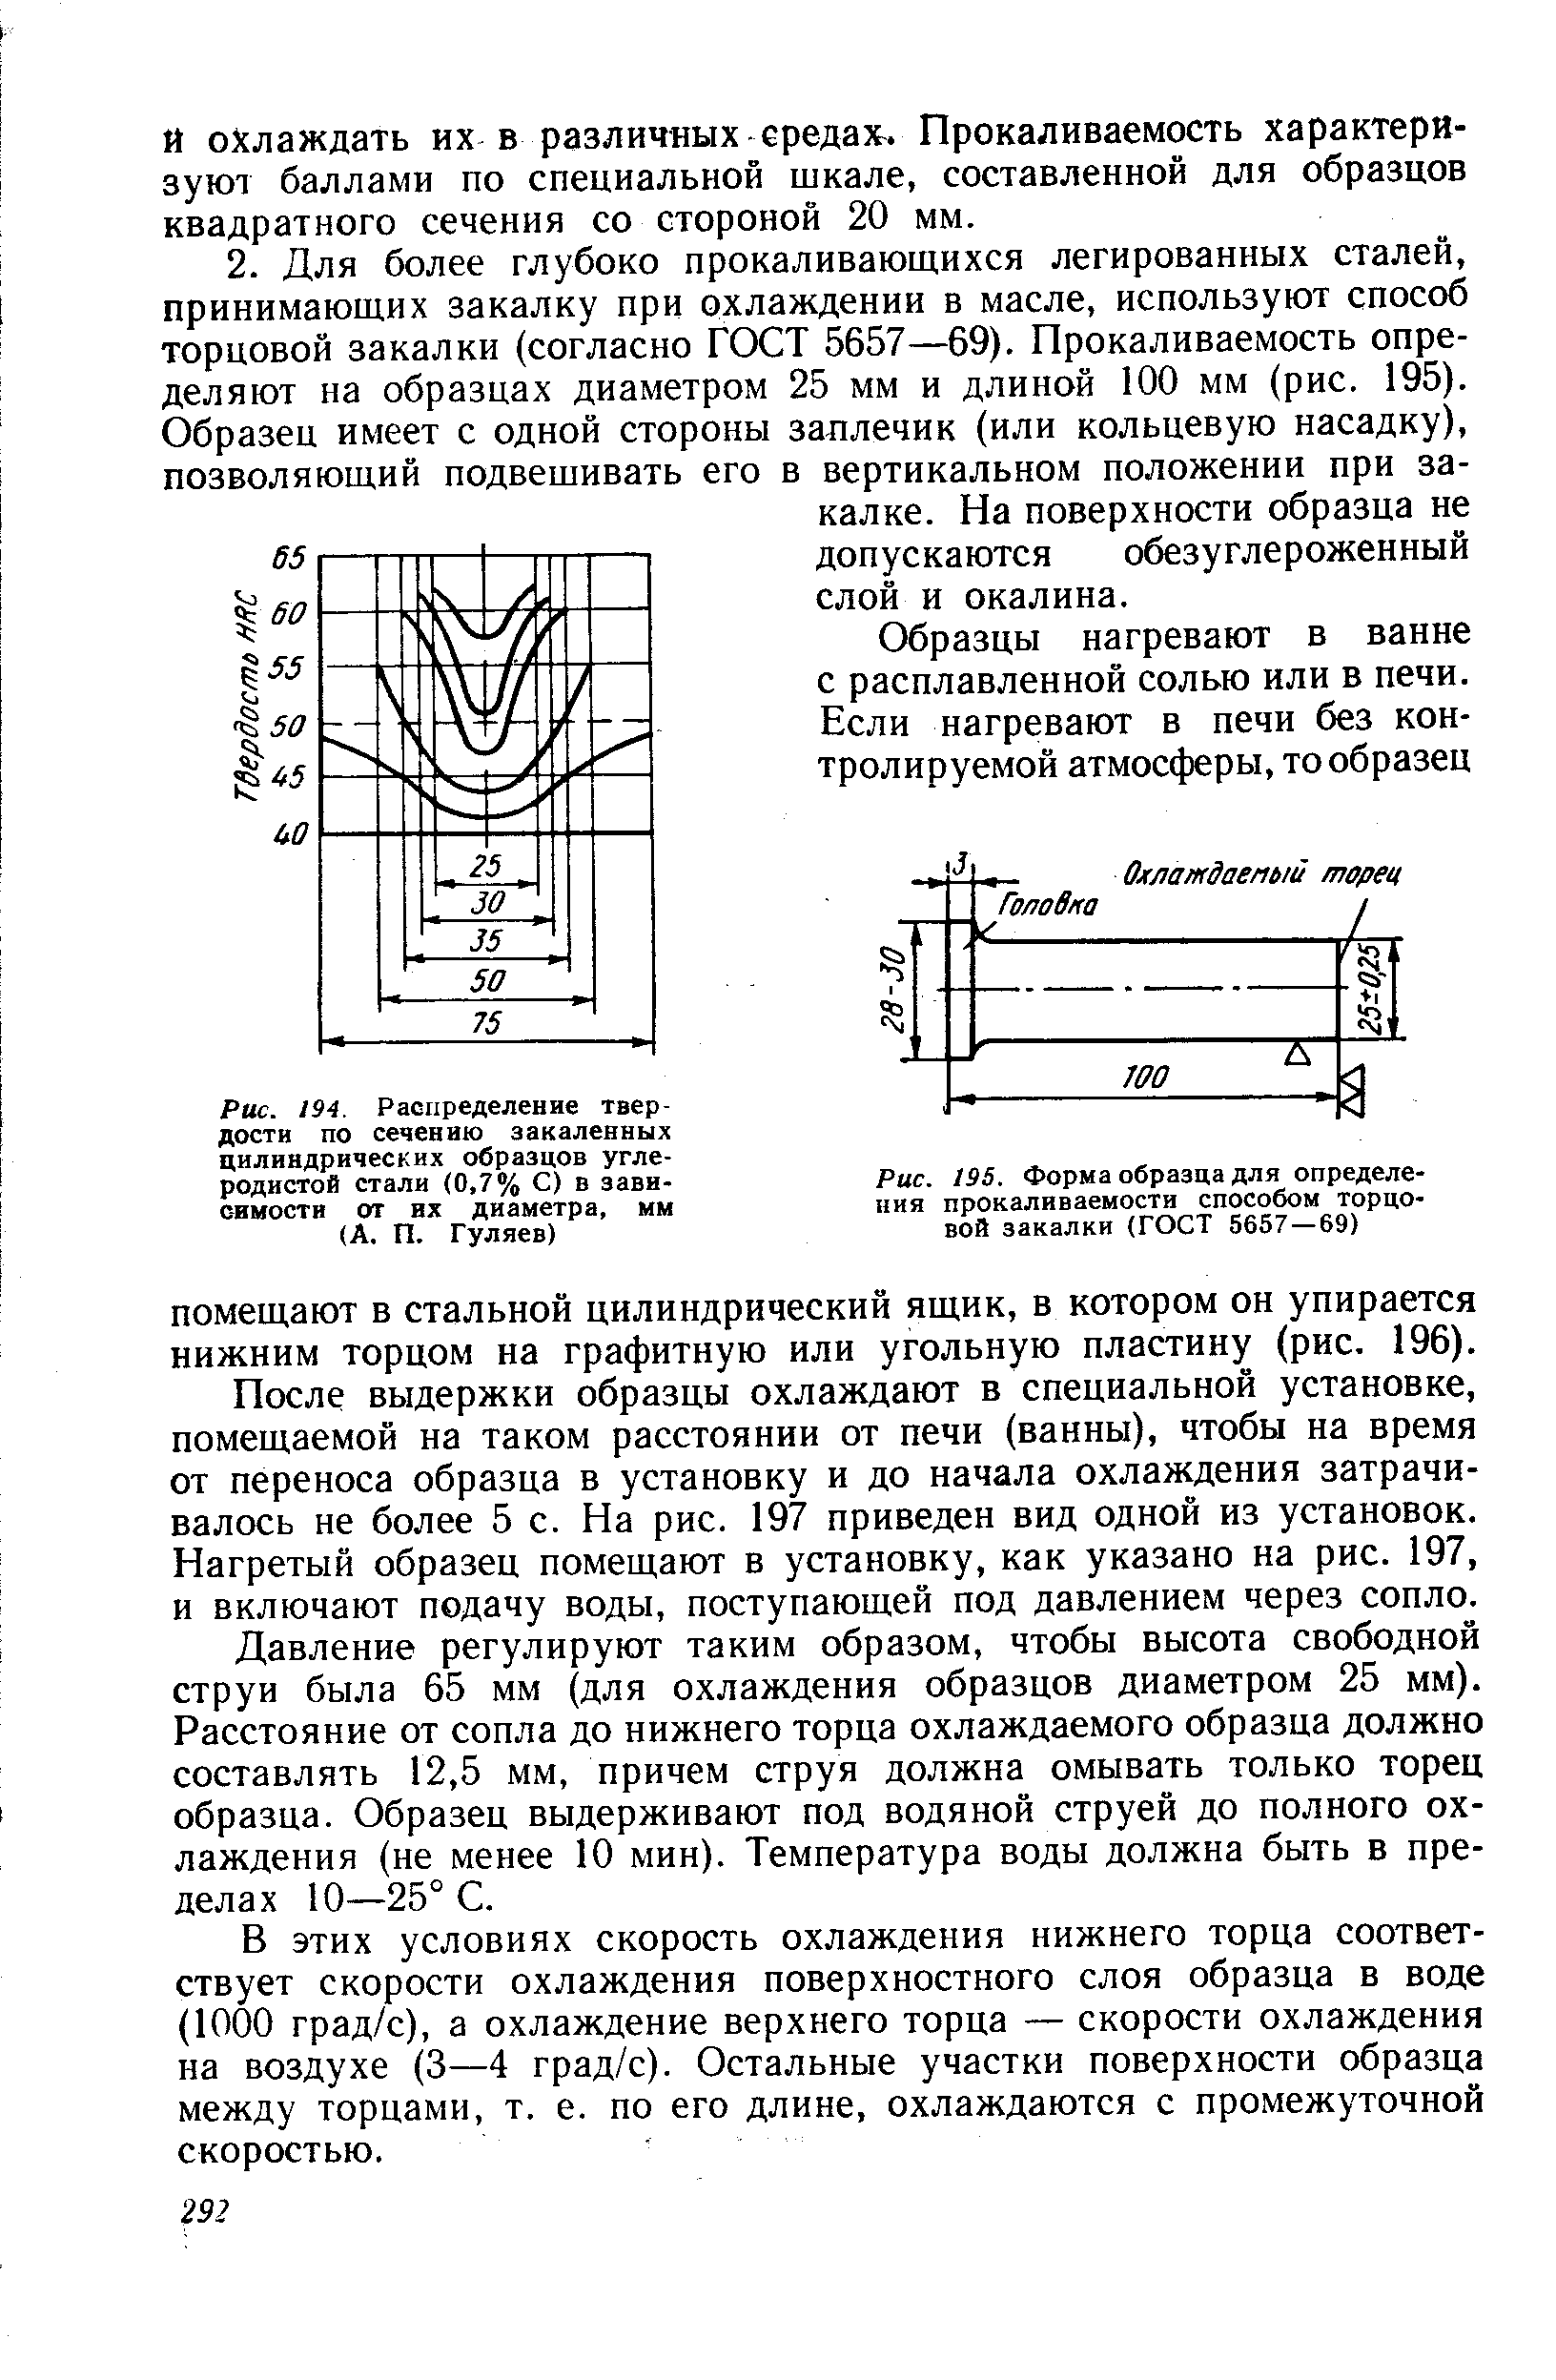 Рис. 195. Форма образца для определения прокаливаемости способом торцовой закалки (ГОСТ 5657 — 69)
